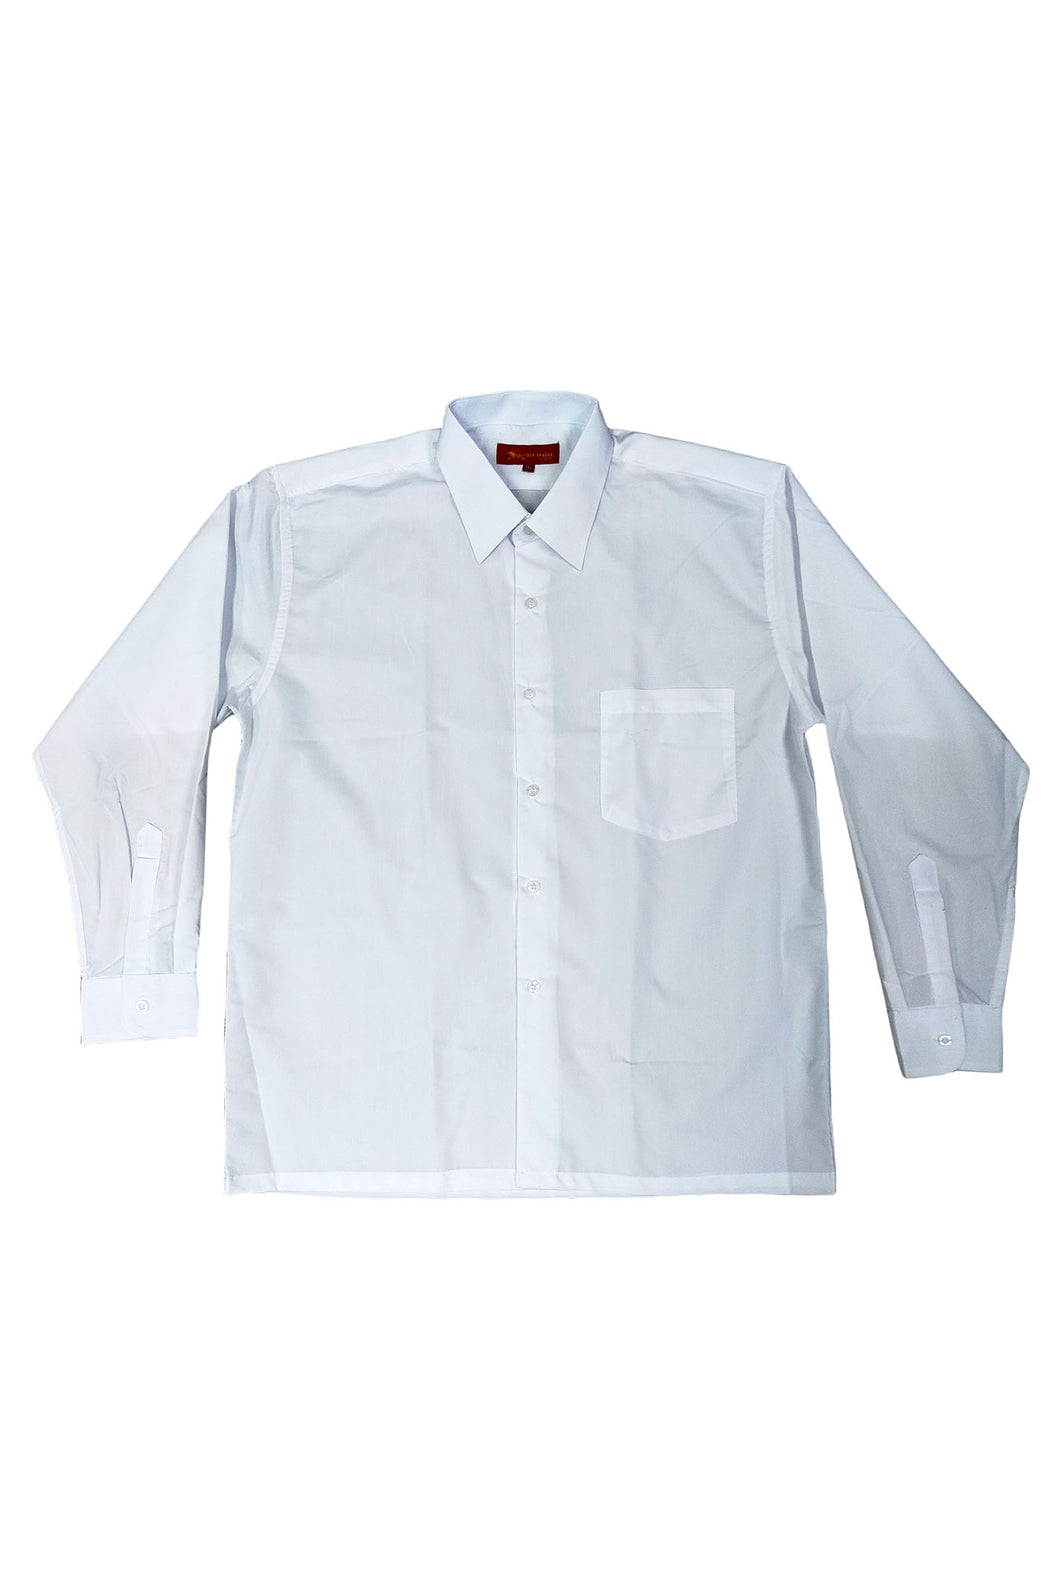 訂製純白短袖恤衫 自訂純色襯衫 單袋設計 來辦訂購恤衫 恤衫專門店  HK-Hanyeung-005